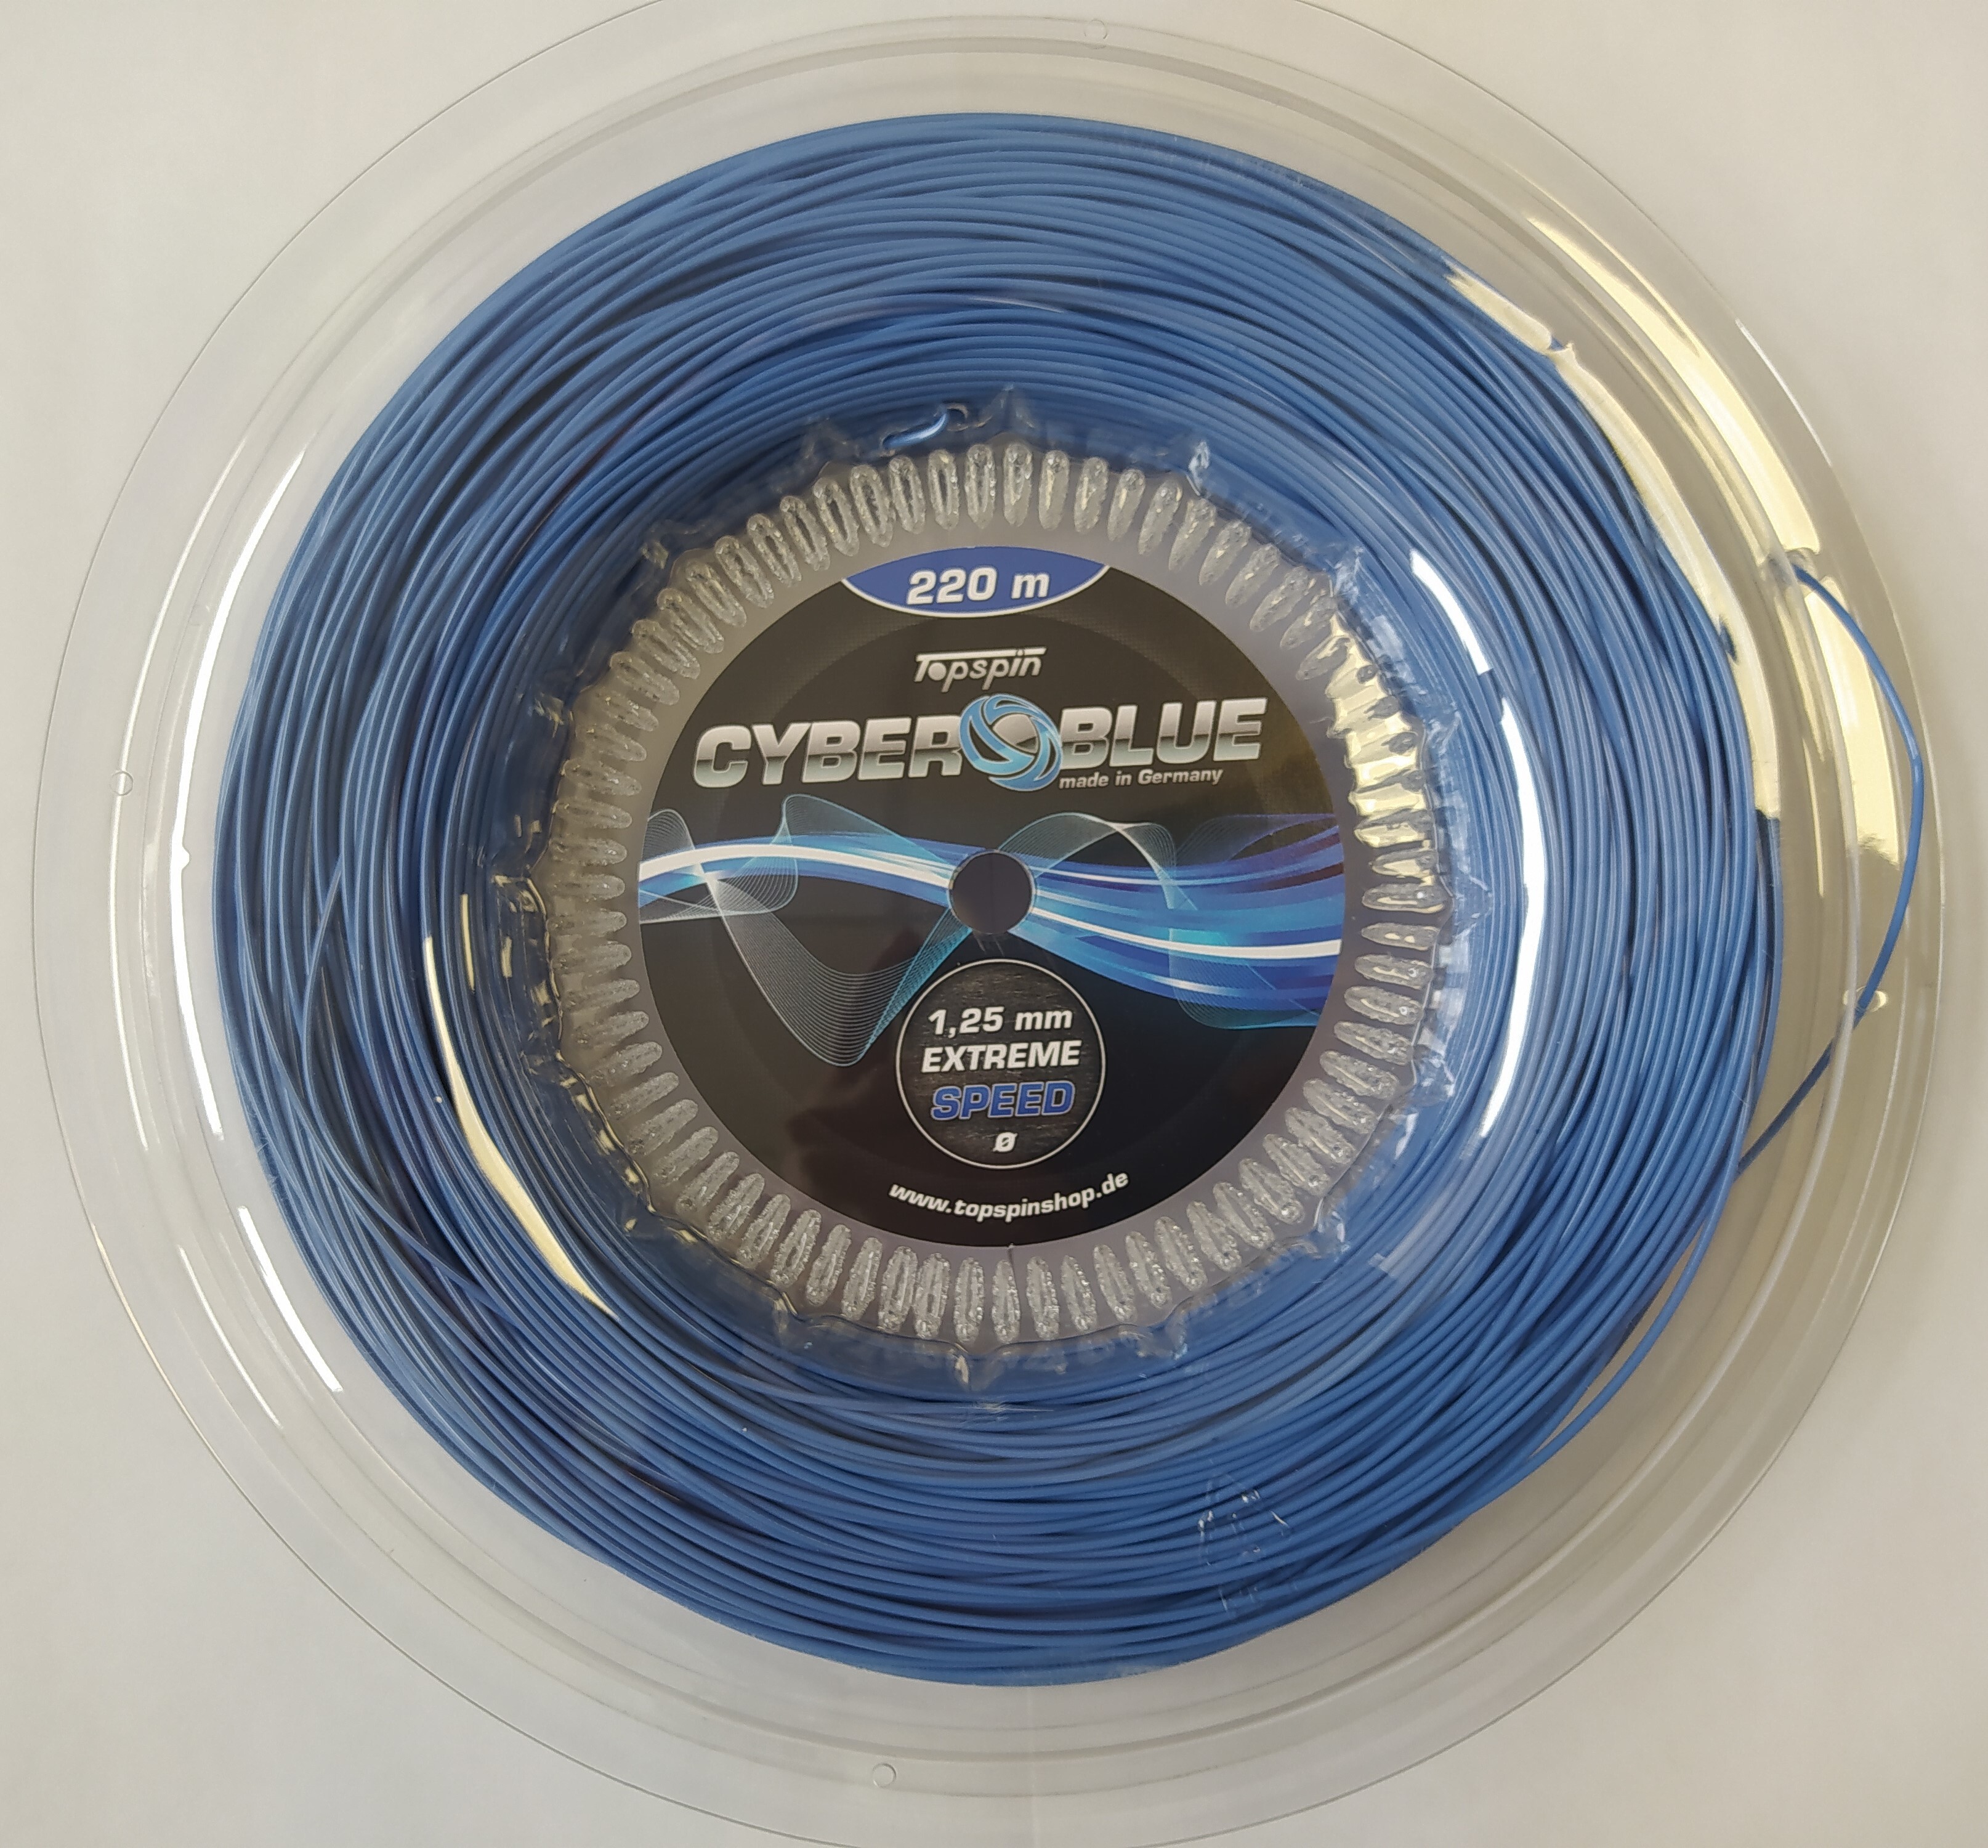 фото Струны для теннисной ракетки 220 м 1,25 мм topspin cyber blue extreme speed